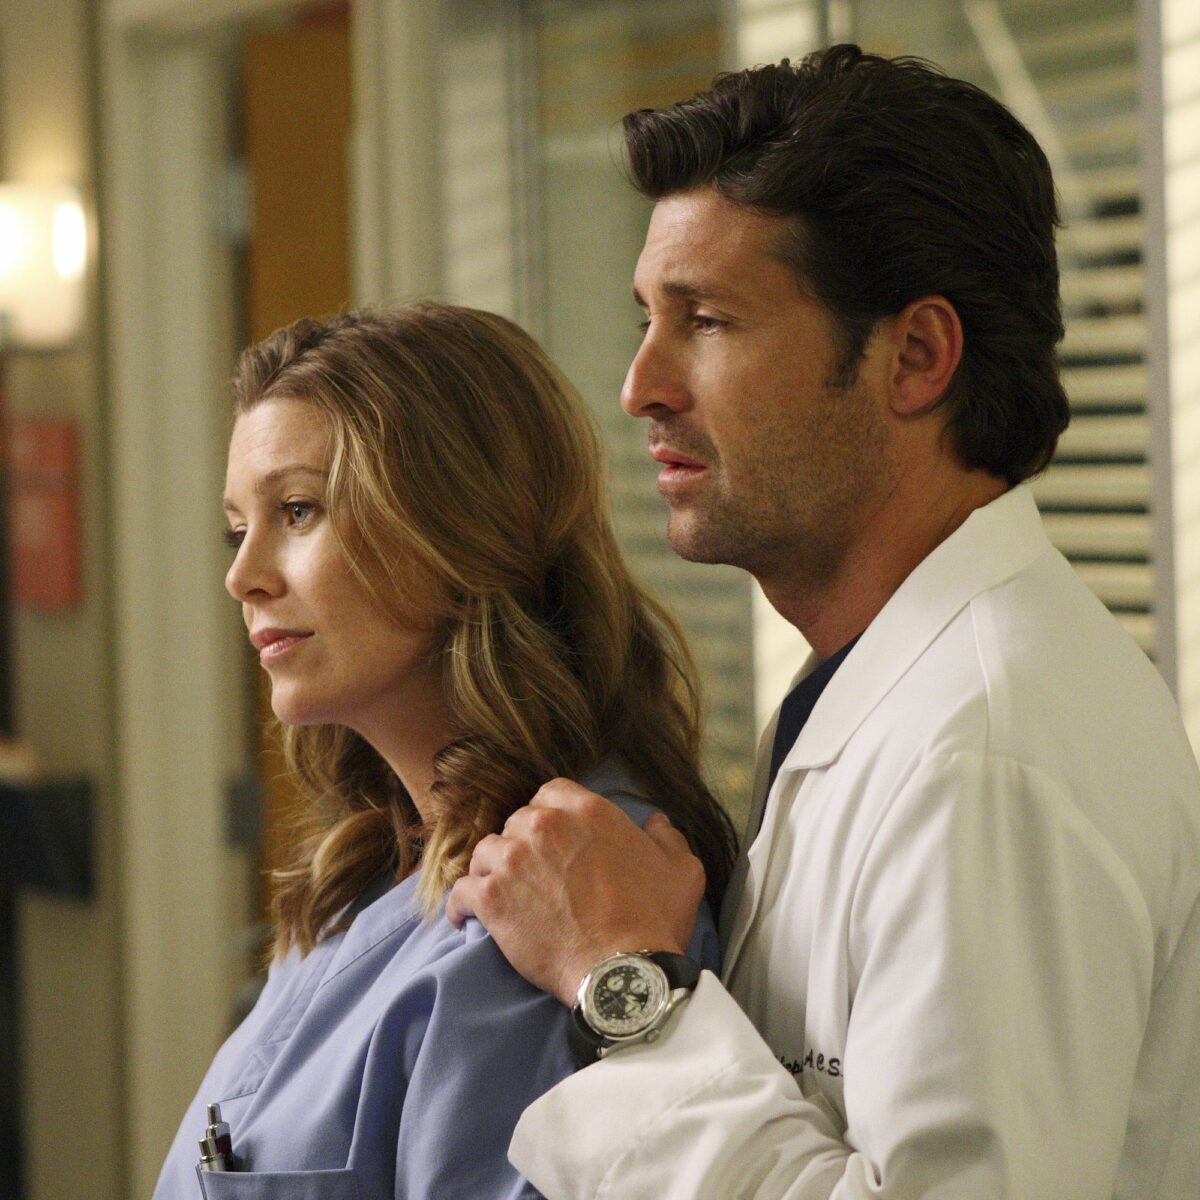 ¿Cuál es la diferencia de edad de Meredith y Derek en Grey’s Anatomy?